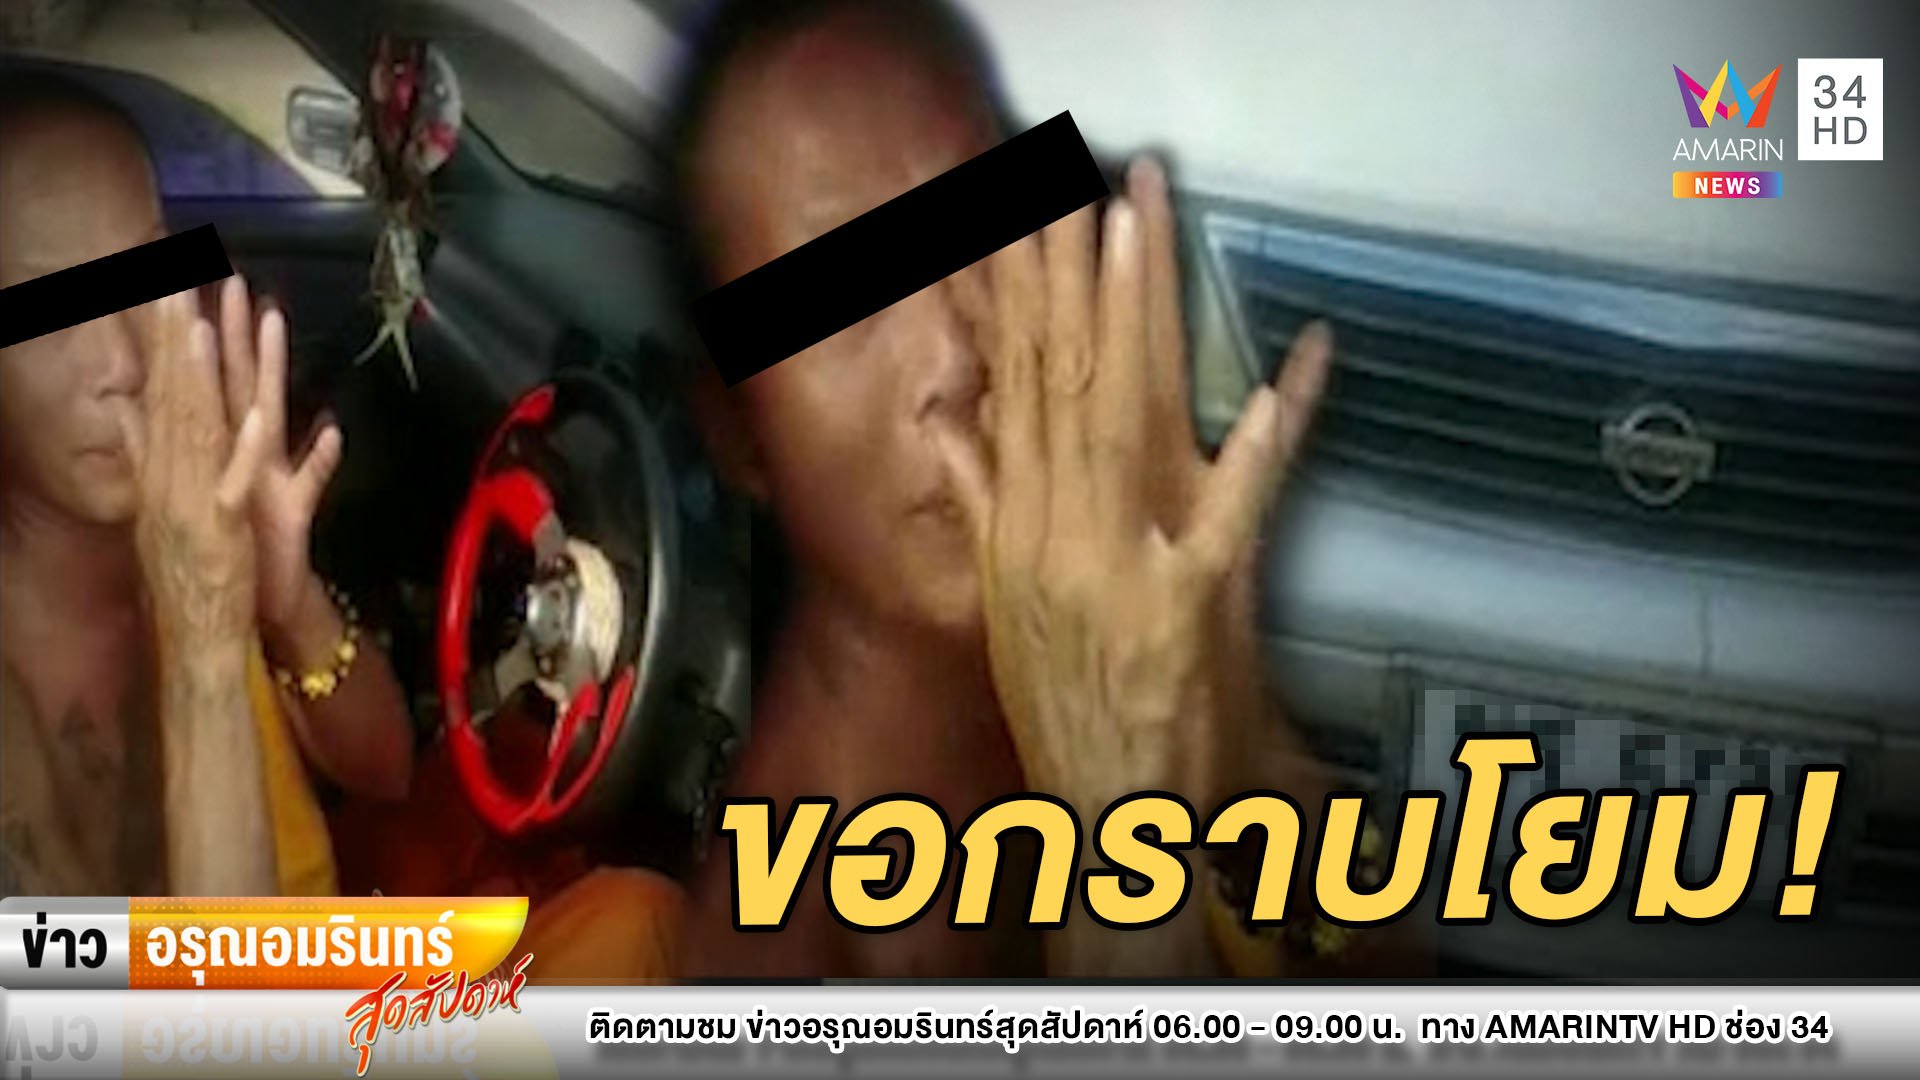 กราบโยม! พระ 2 รูปเมาขับรถถอยชนรถชาวบ้าน พูดจาไม่รู้เรื่อง | ข่าวอรุณอมรินทร์ | 13 ธ.ค. 63 | AMARIN TVHD34